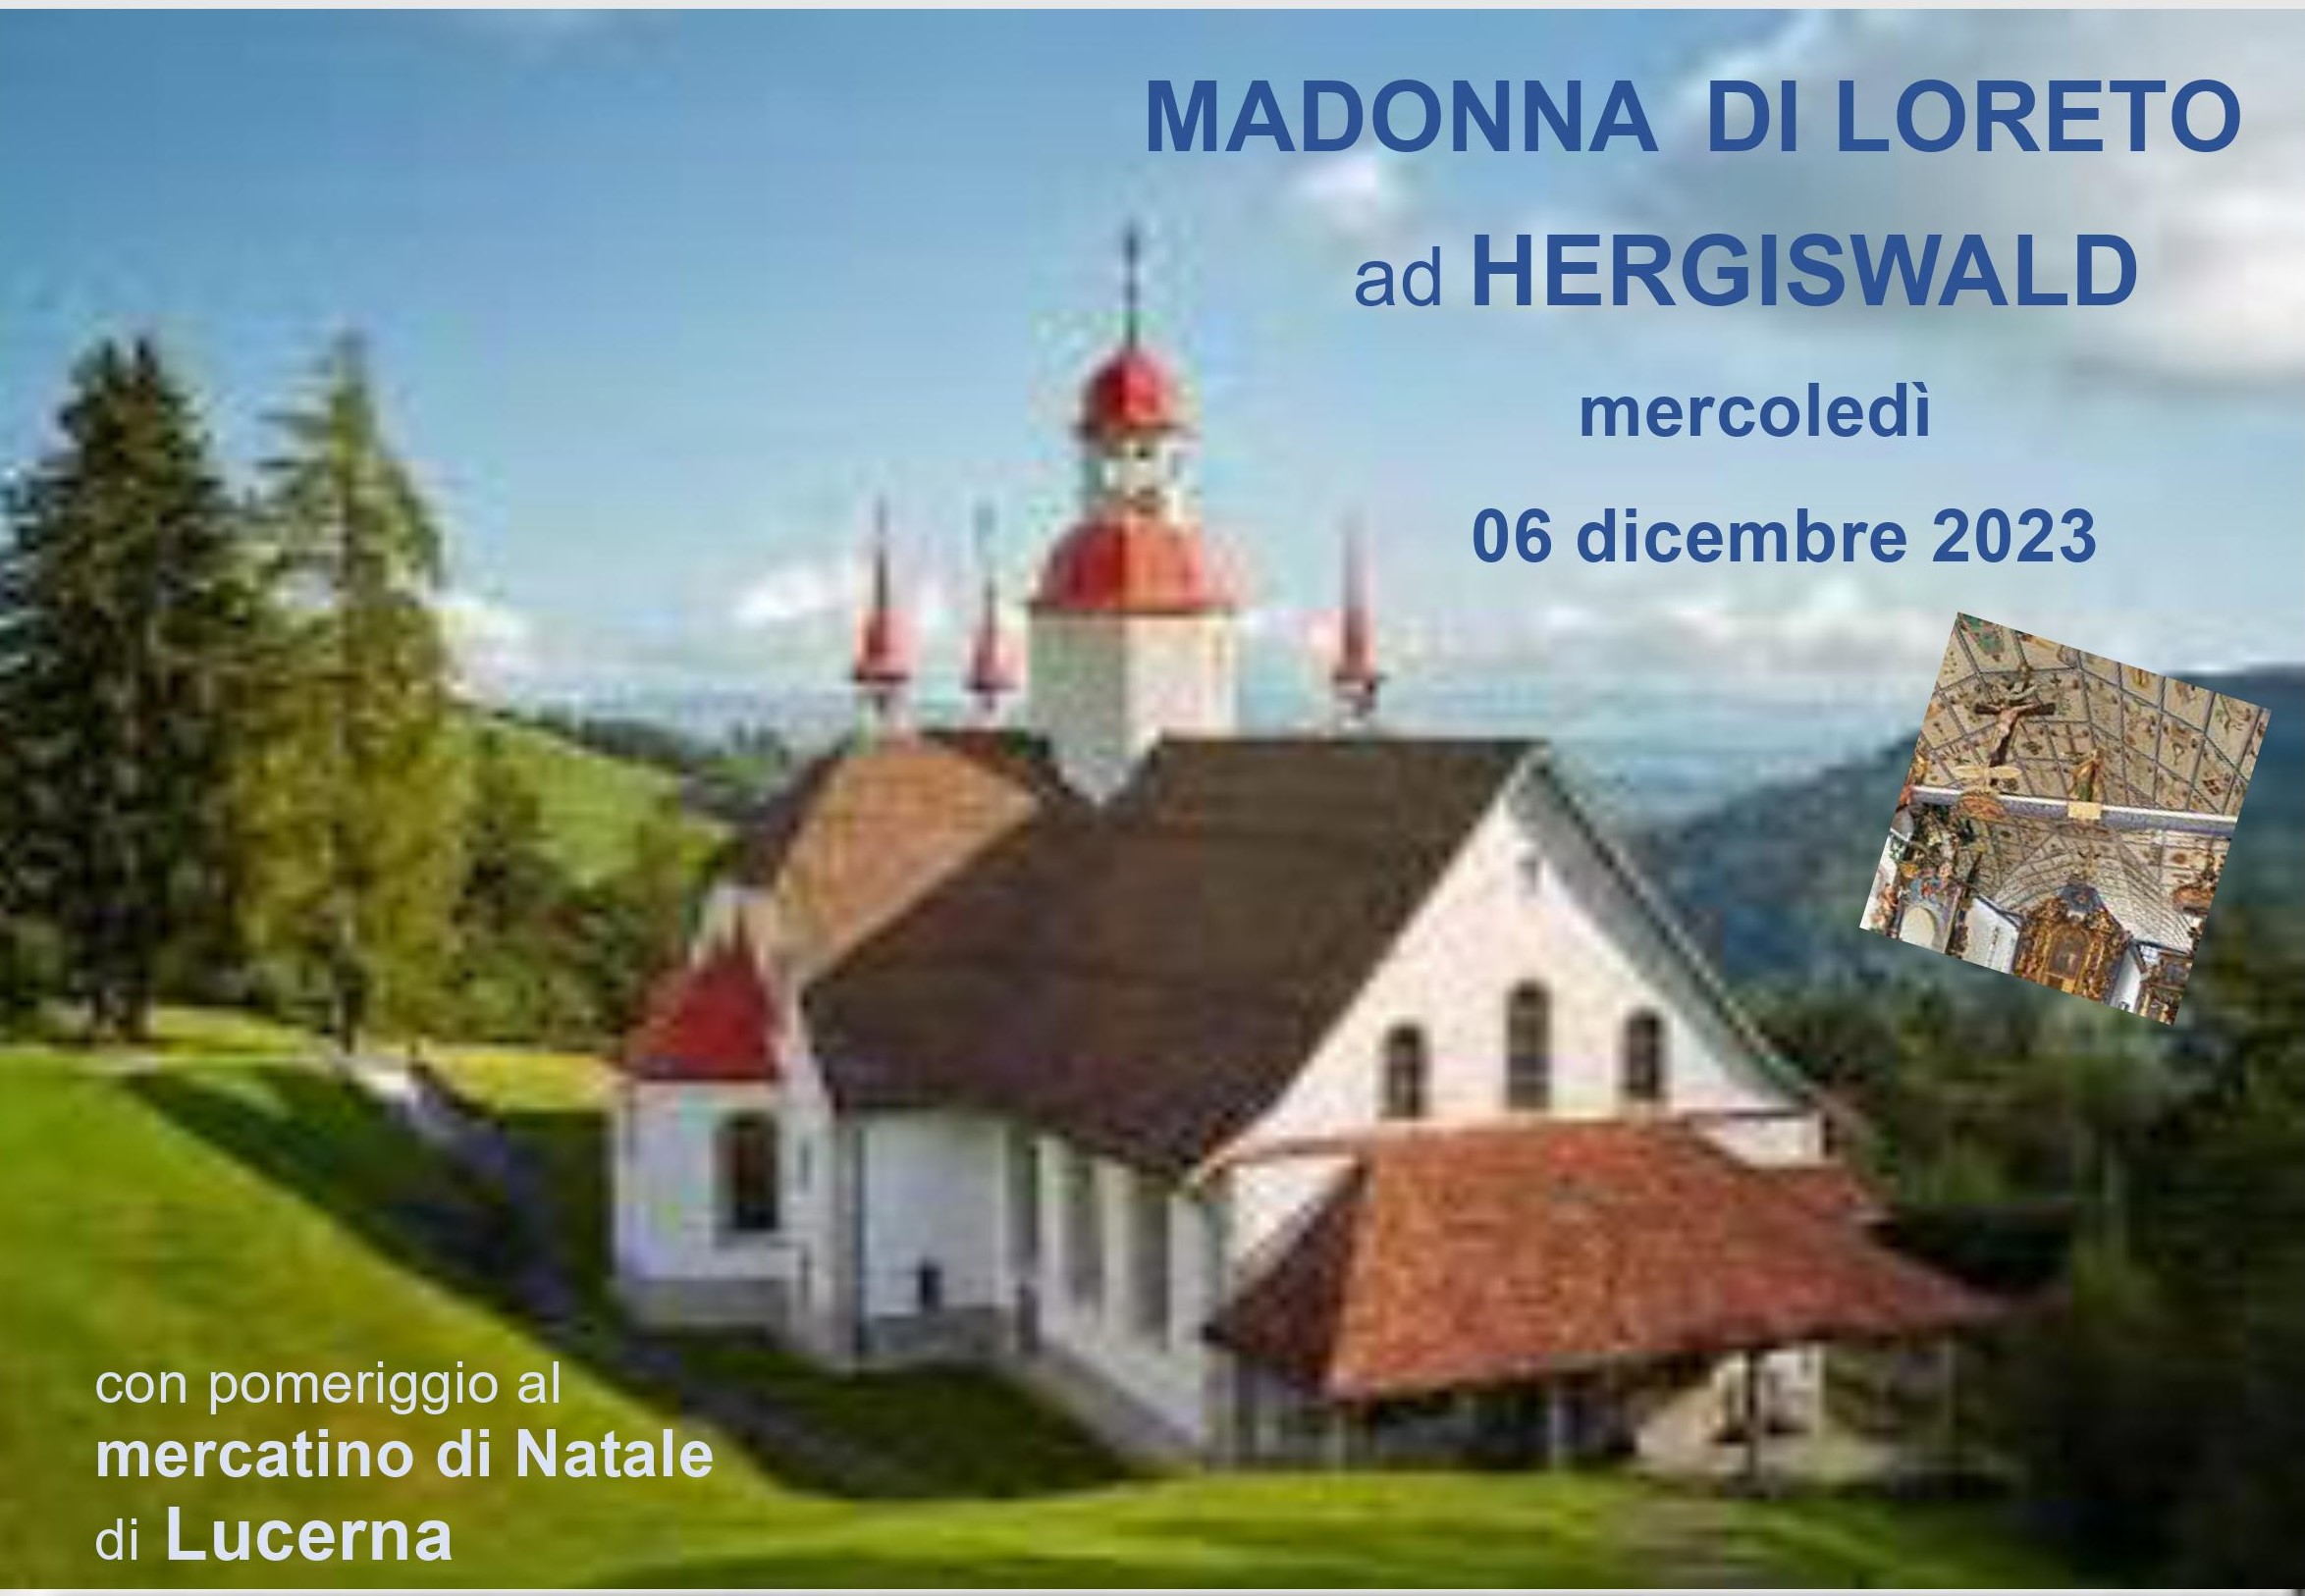 Pellegrinaggio alla Madonna di Loreto a Hergiswald